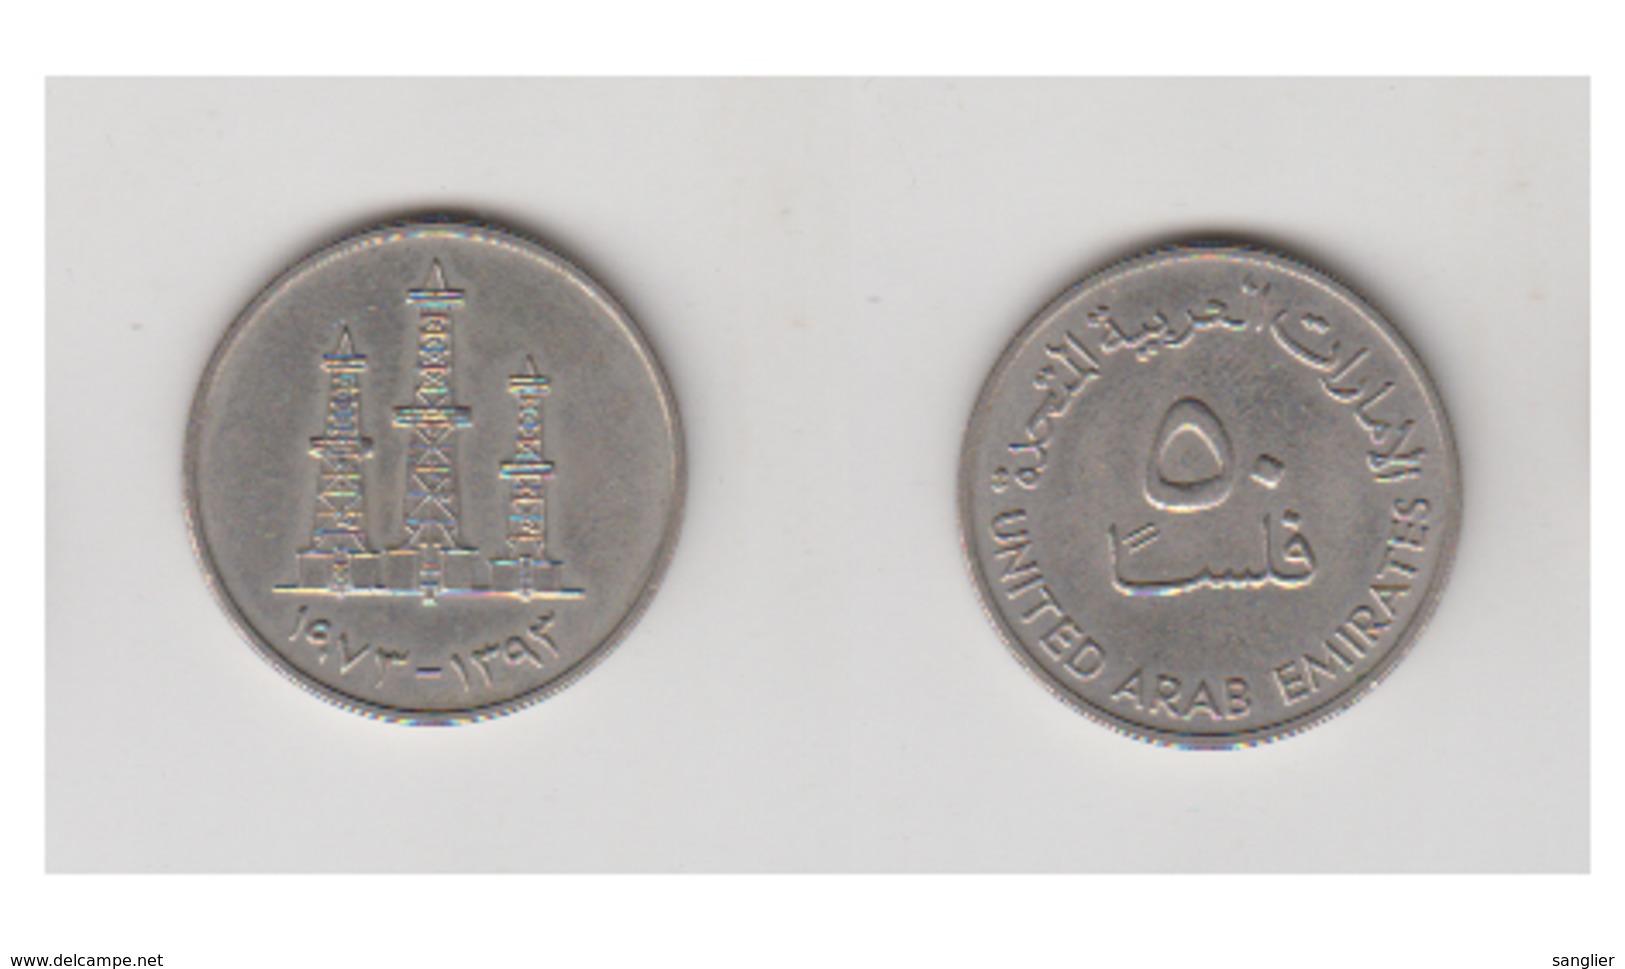 50 Fils 1973 (1393) UNITED ARAB EMIRATES - Ver. Arab. Emirate